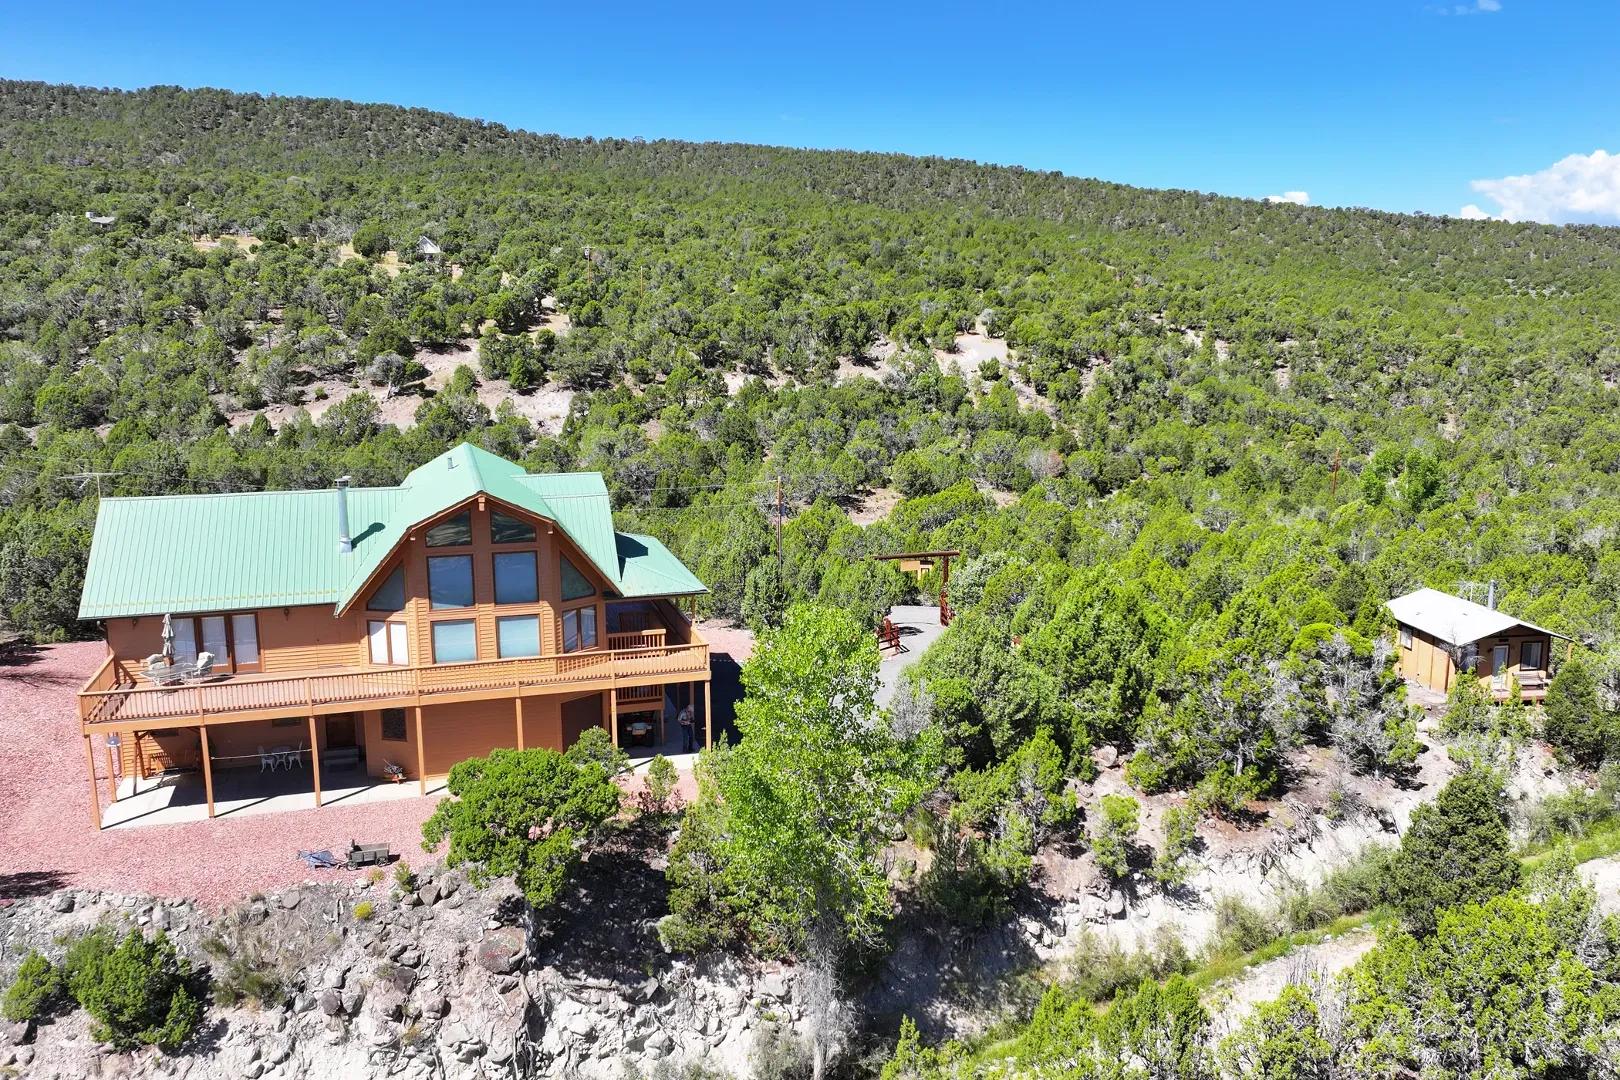 Home Cabin Acreage Borders Public Land For Sale in Colorado 1